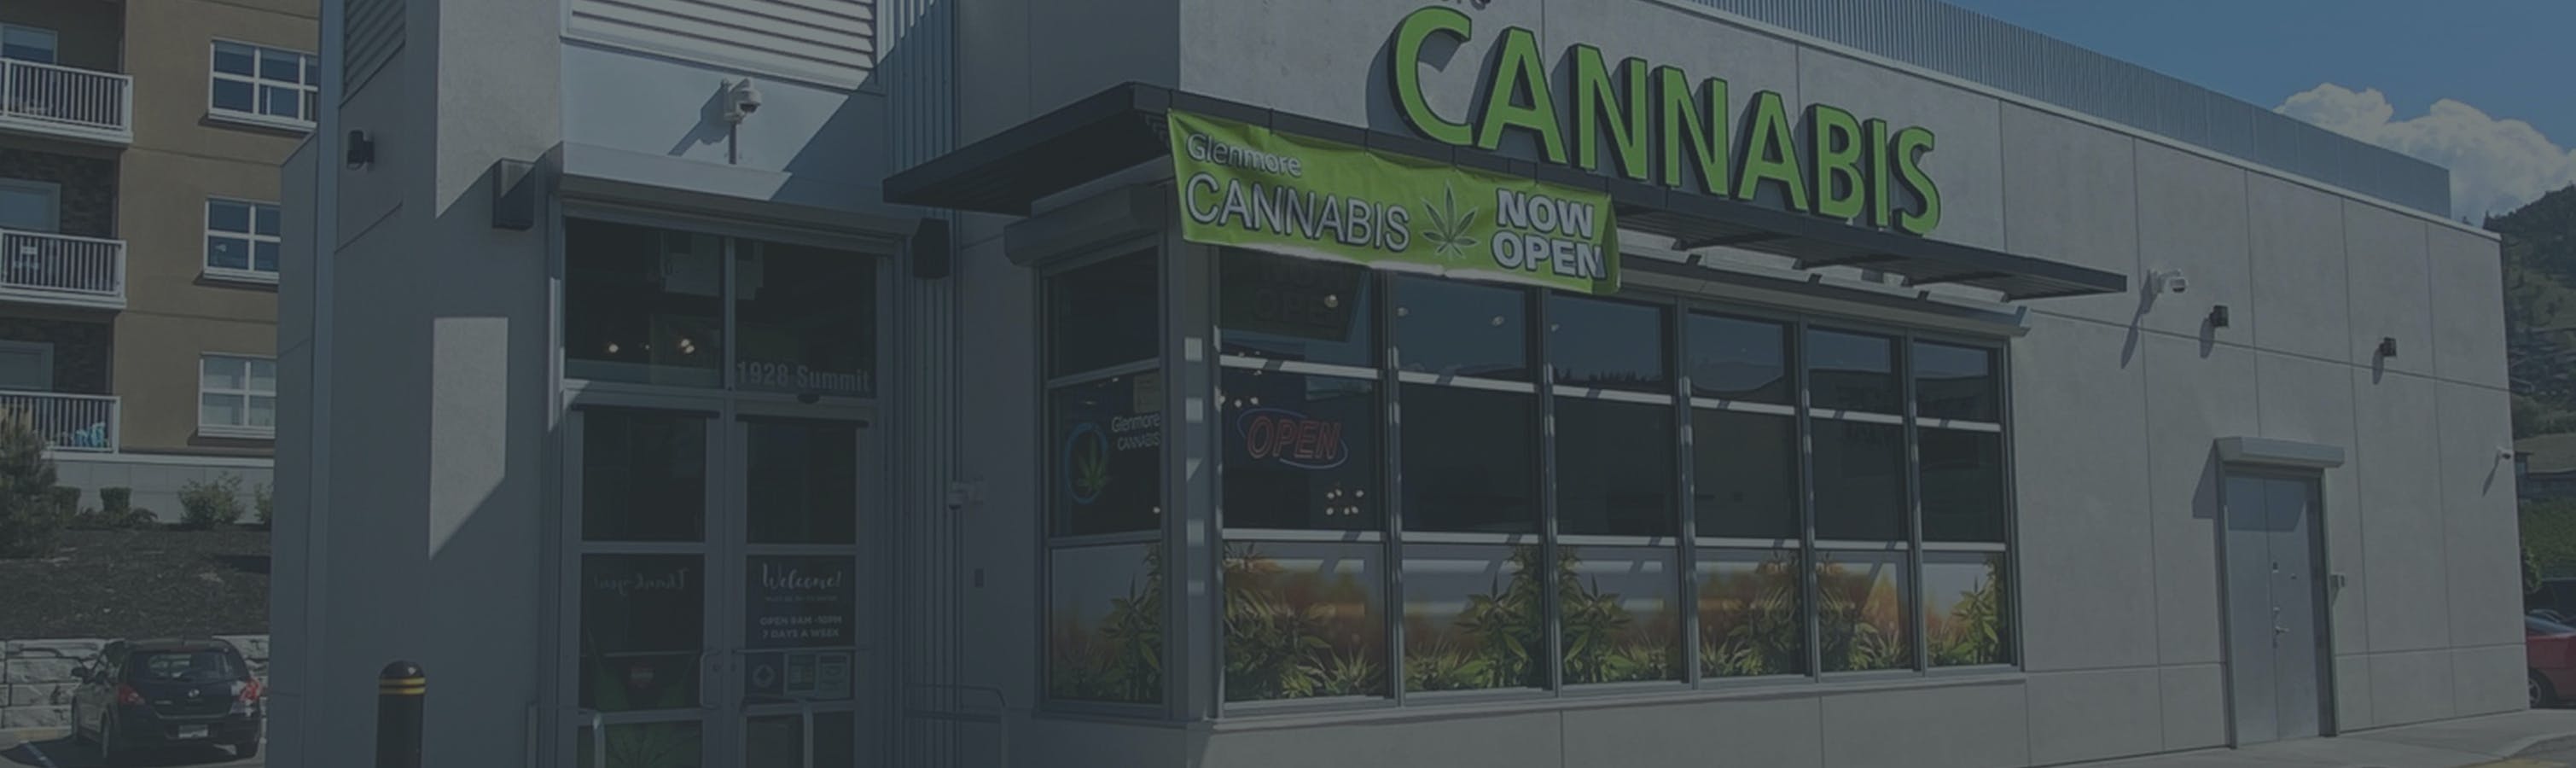 Cannabis Store Glenmore Cannabis - 0